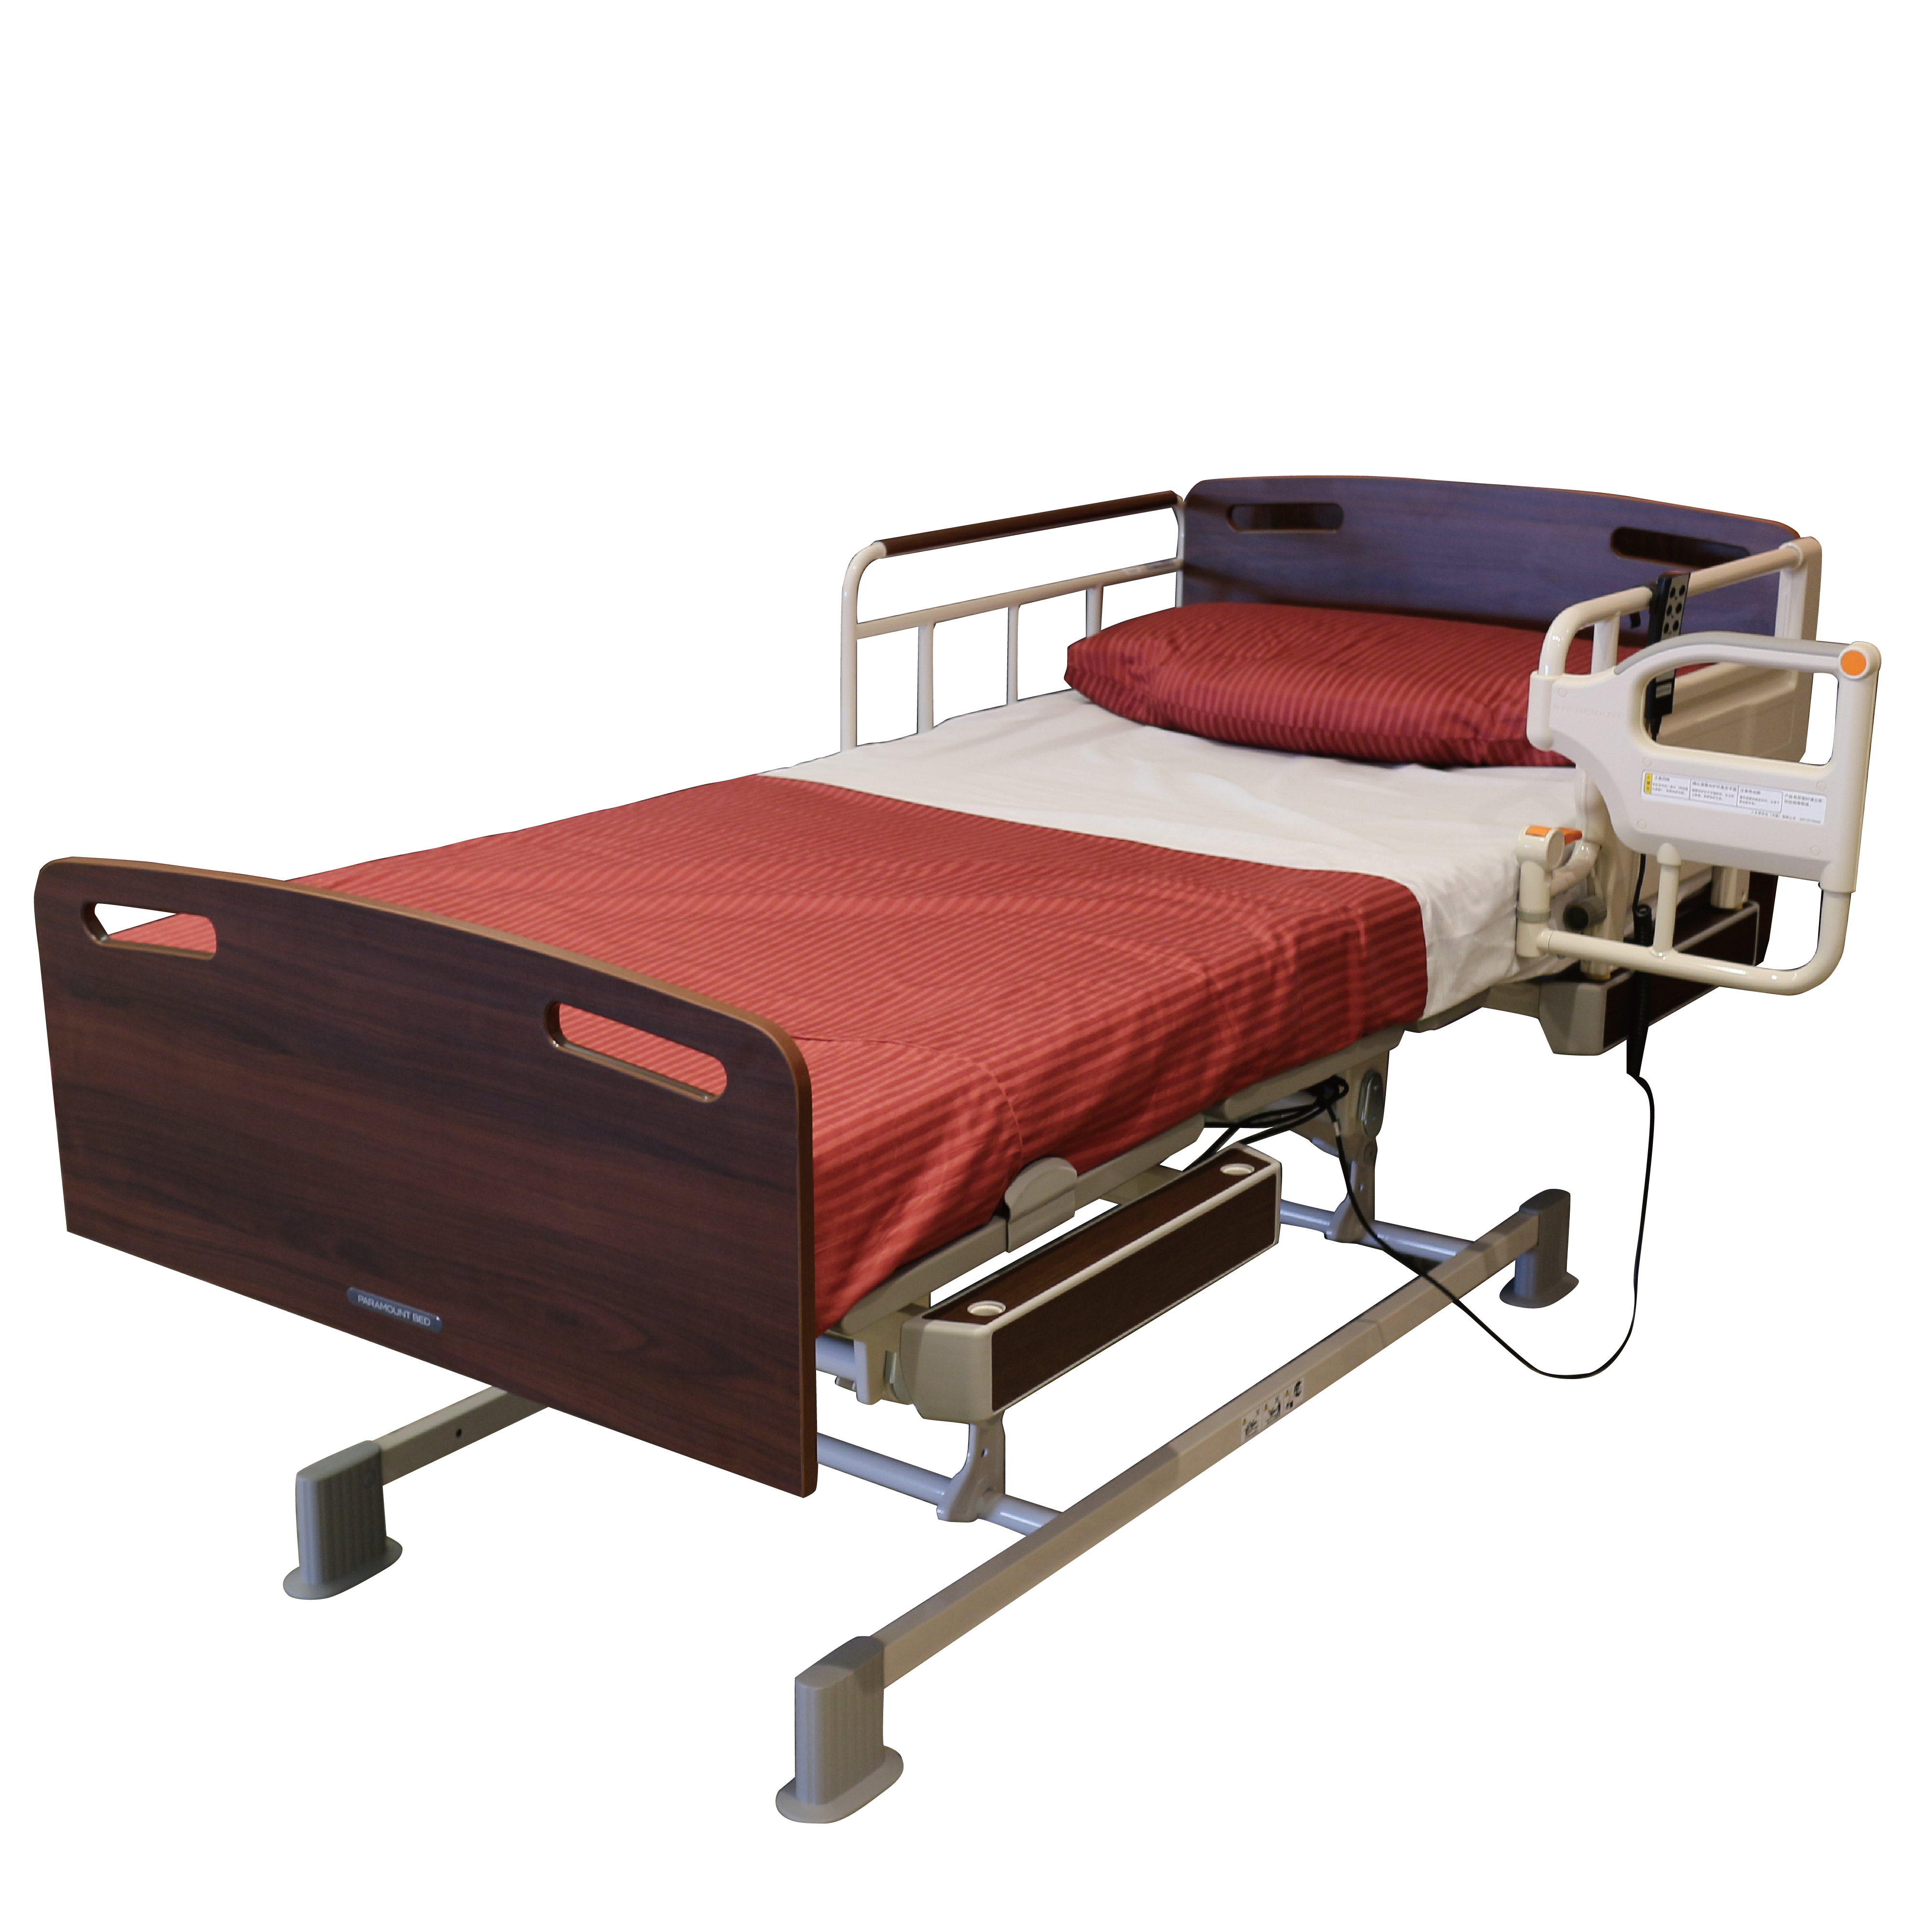 电动护理床用于病人或老人的治疗和康复护理使用